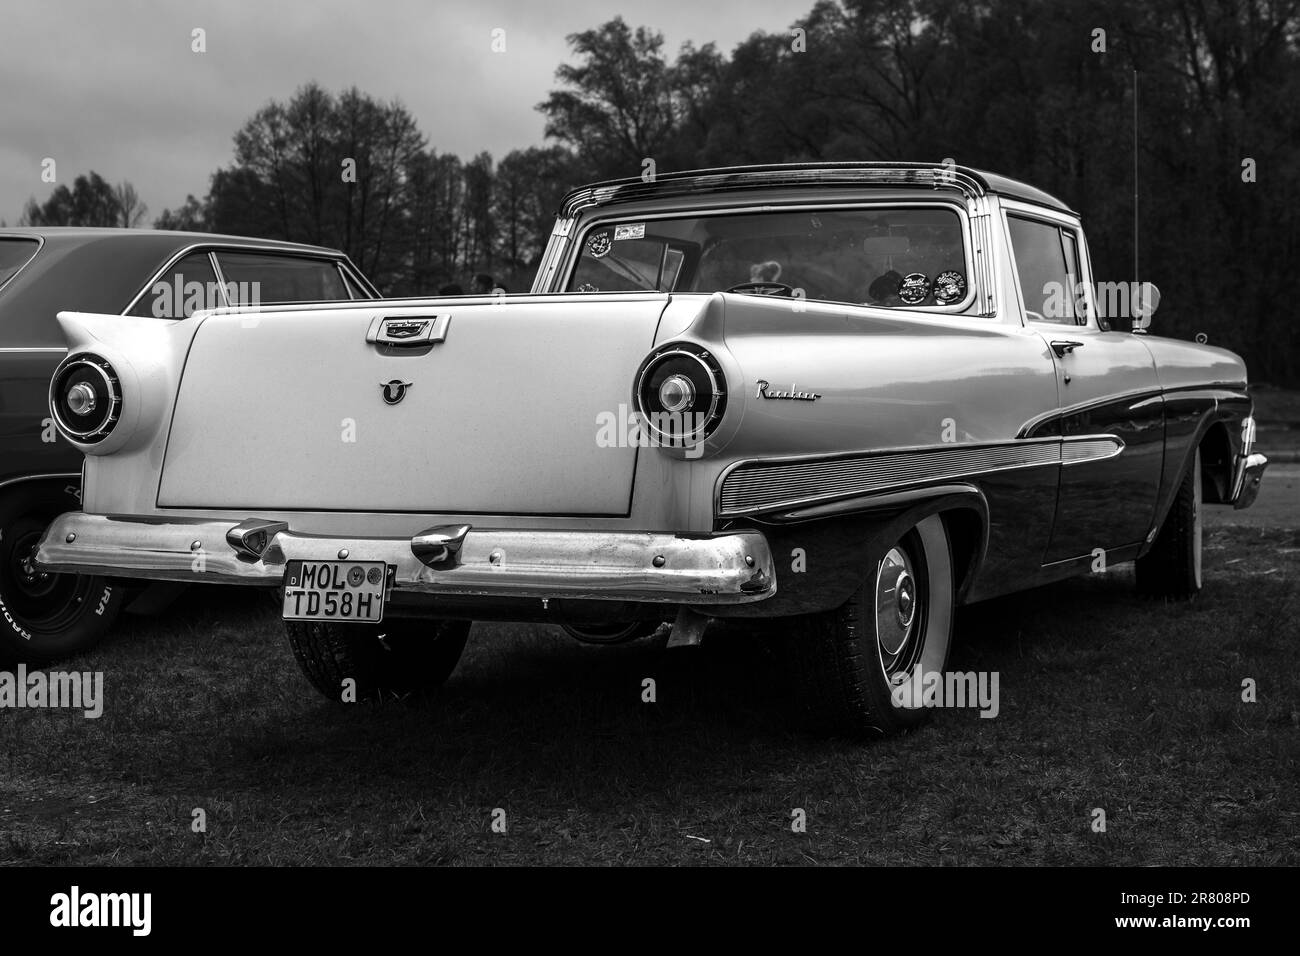 FINOWFURT, GERMANIA - 06 MAGGIO 2023: Il veicolo di servizio/pick-up coupé Ford Ranchero, 1958. Vista posteriore. Bianco e nero. Festival di gara 2023. Foto Stock